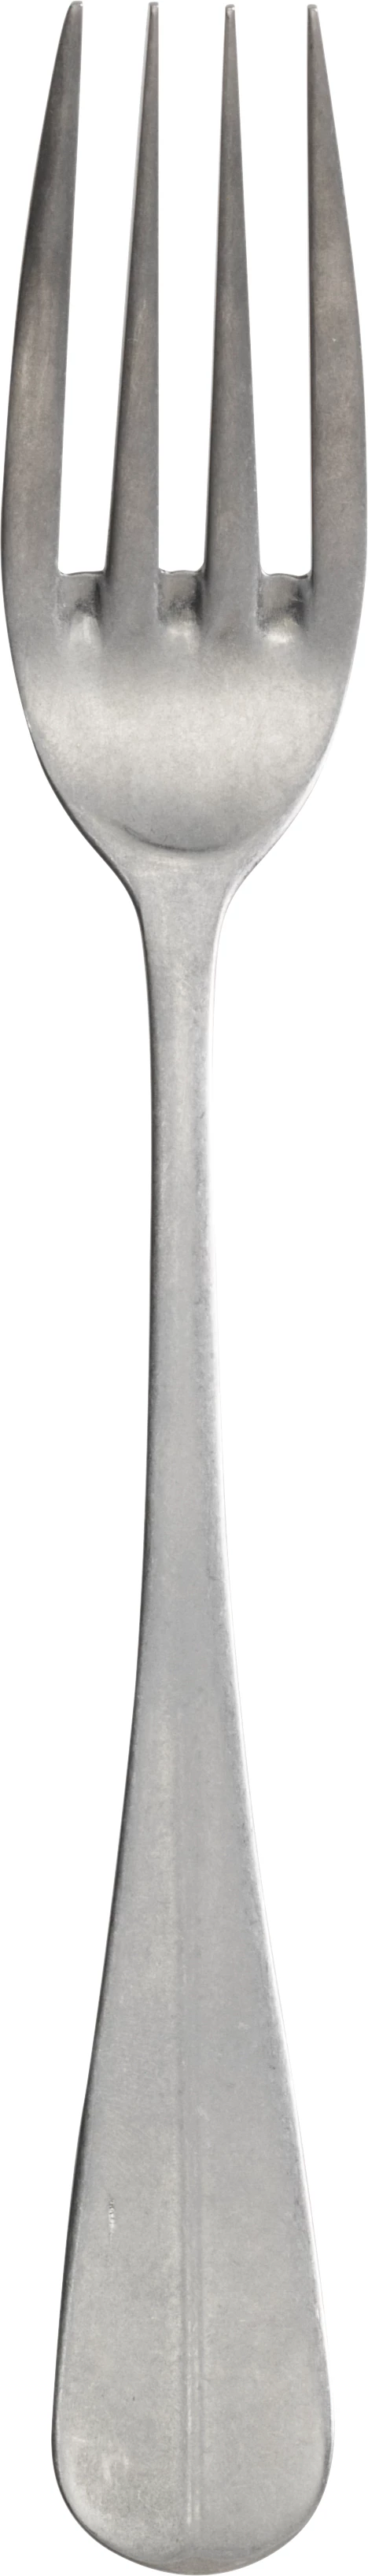 Baguette Vintage spisegaffel, 21cm